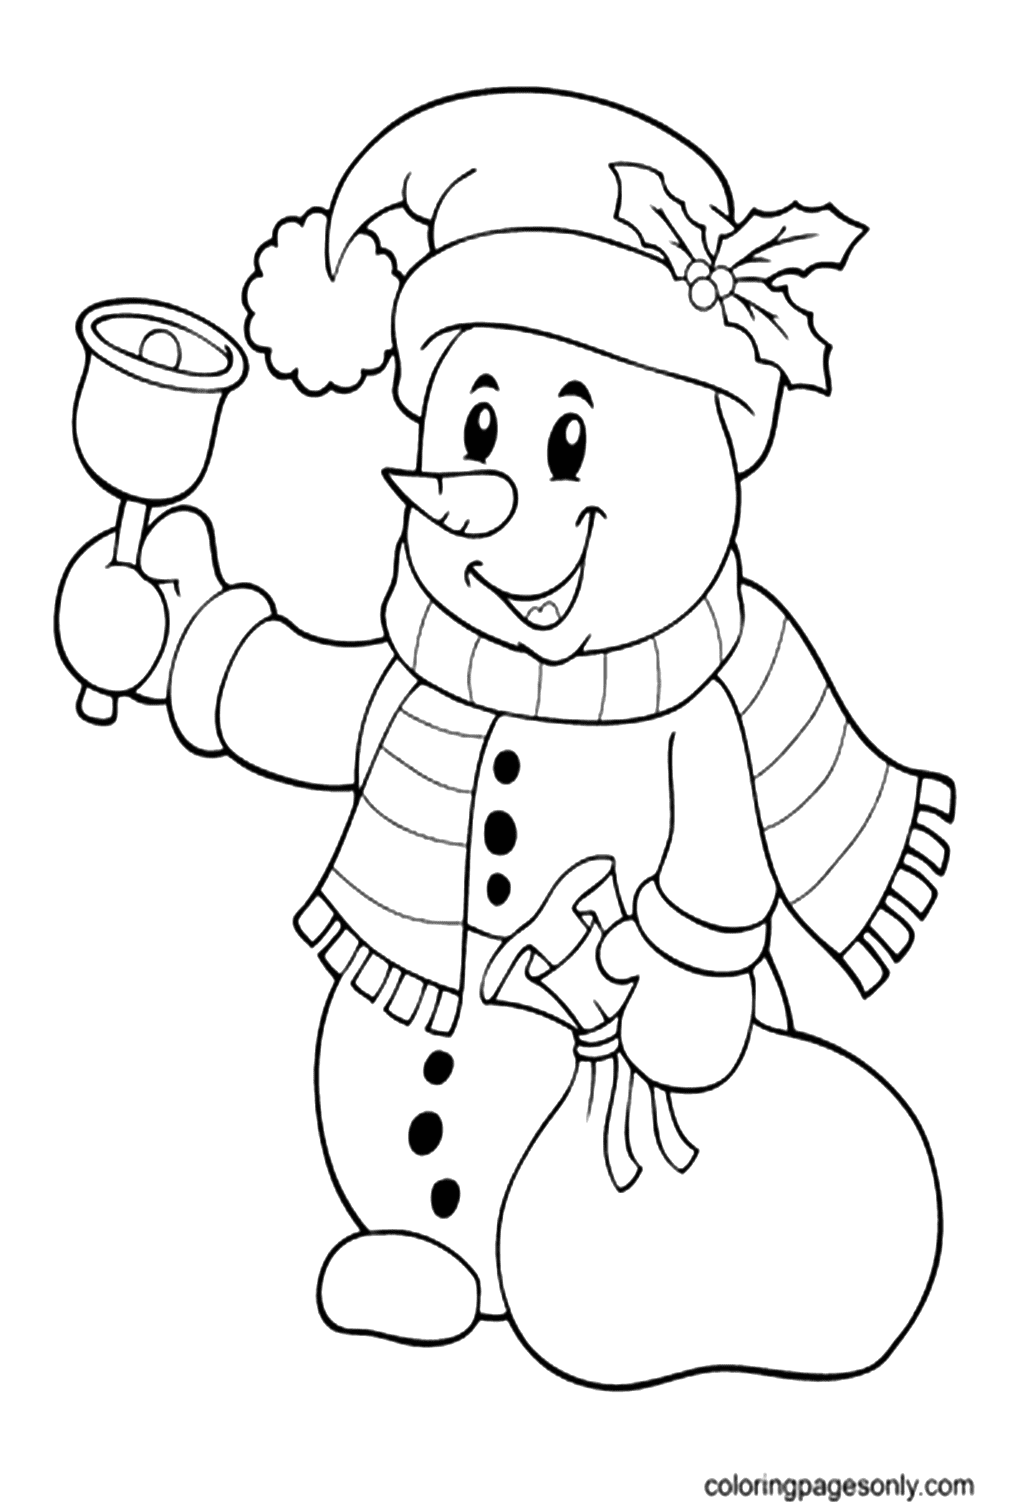 Снеговик звонит в колокольчик из мультфильма "Снеговик"